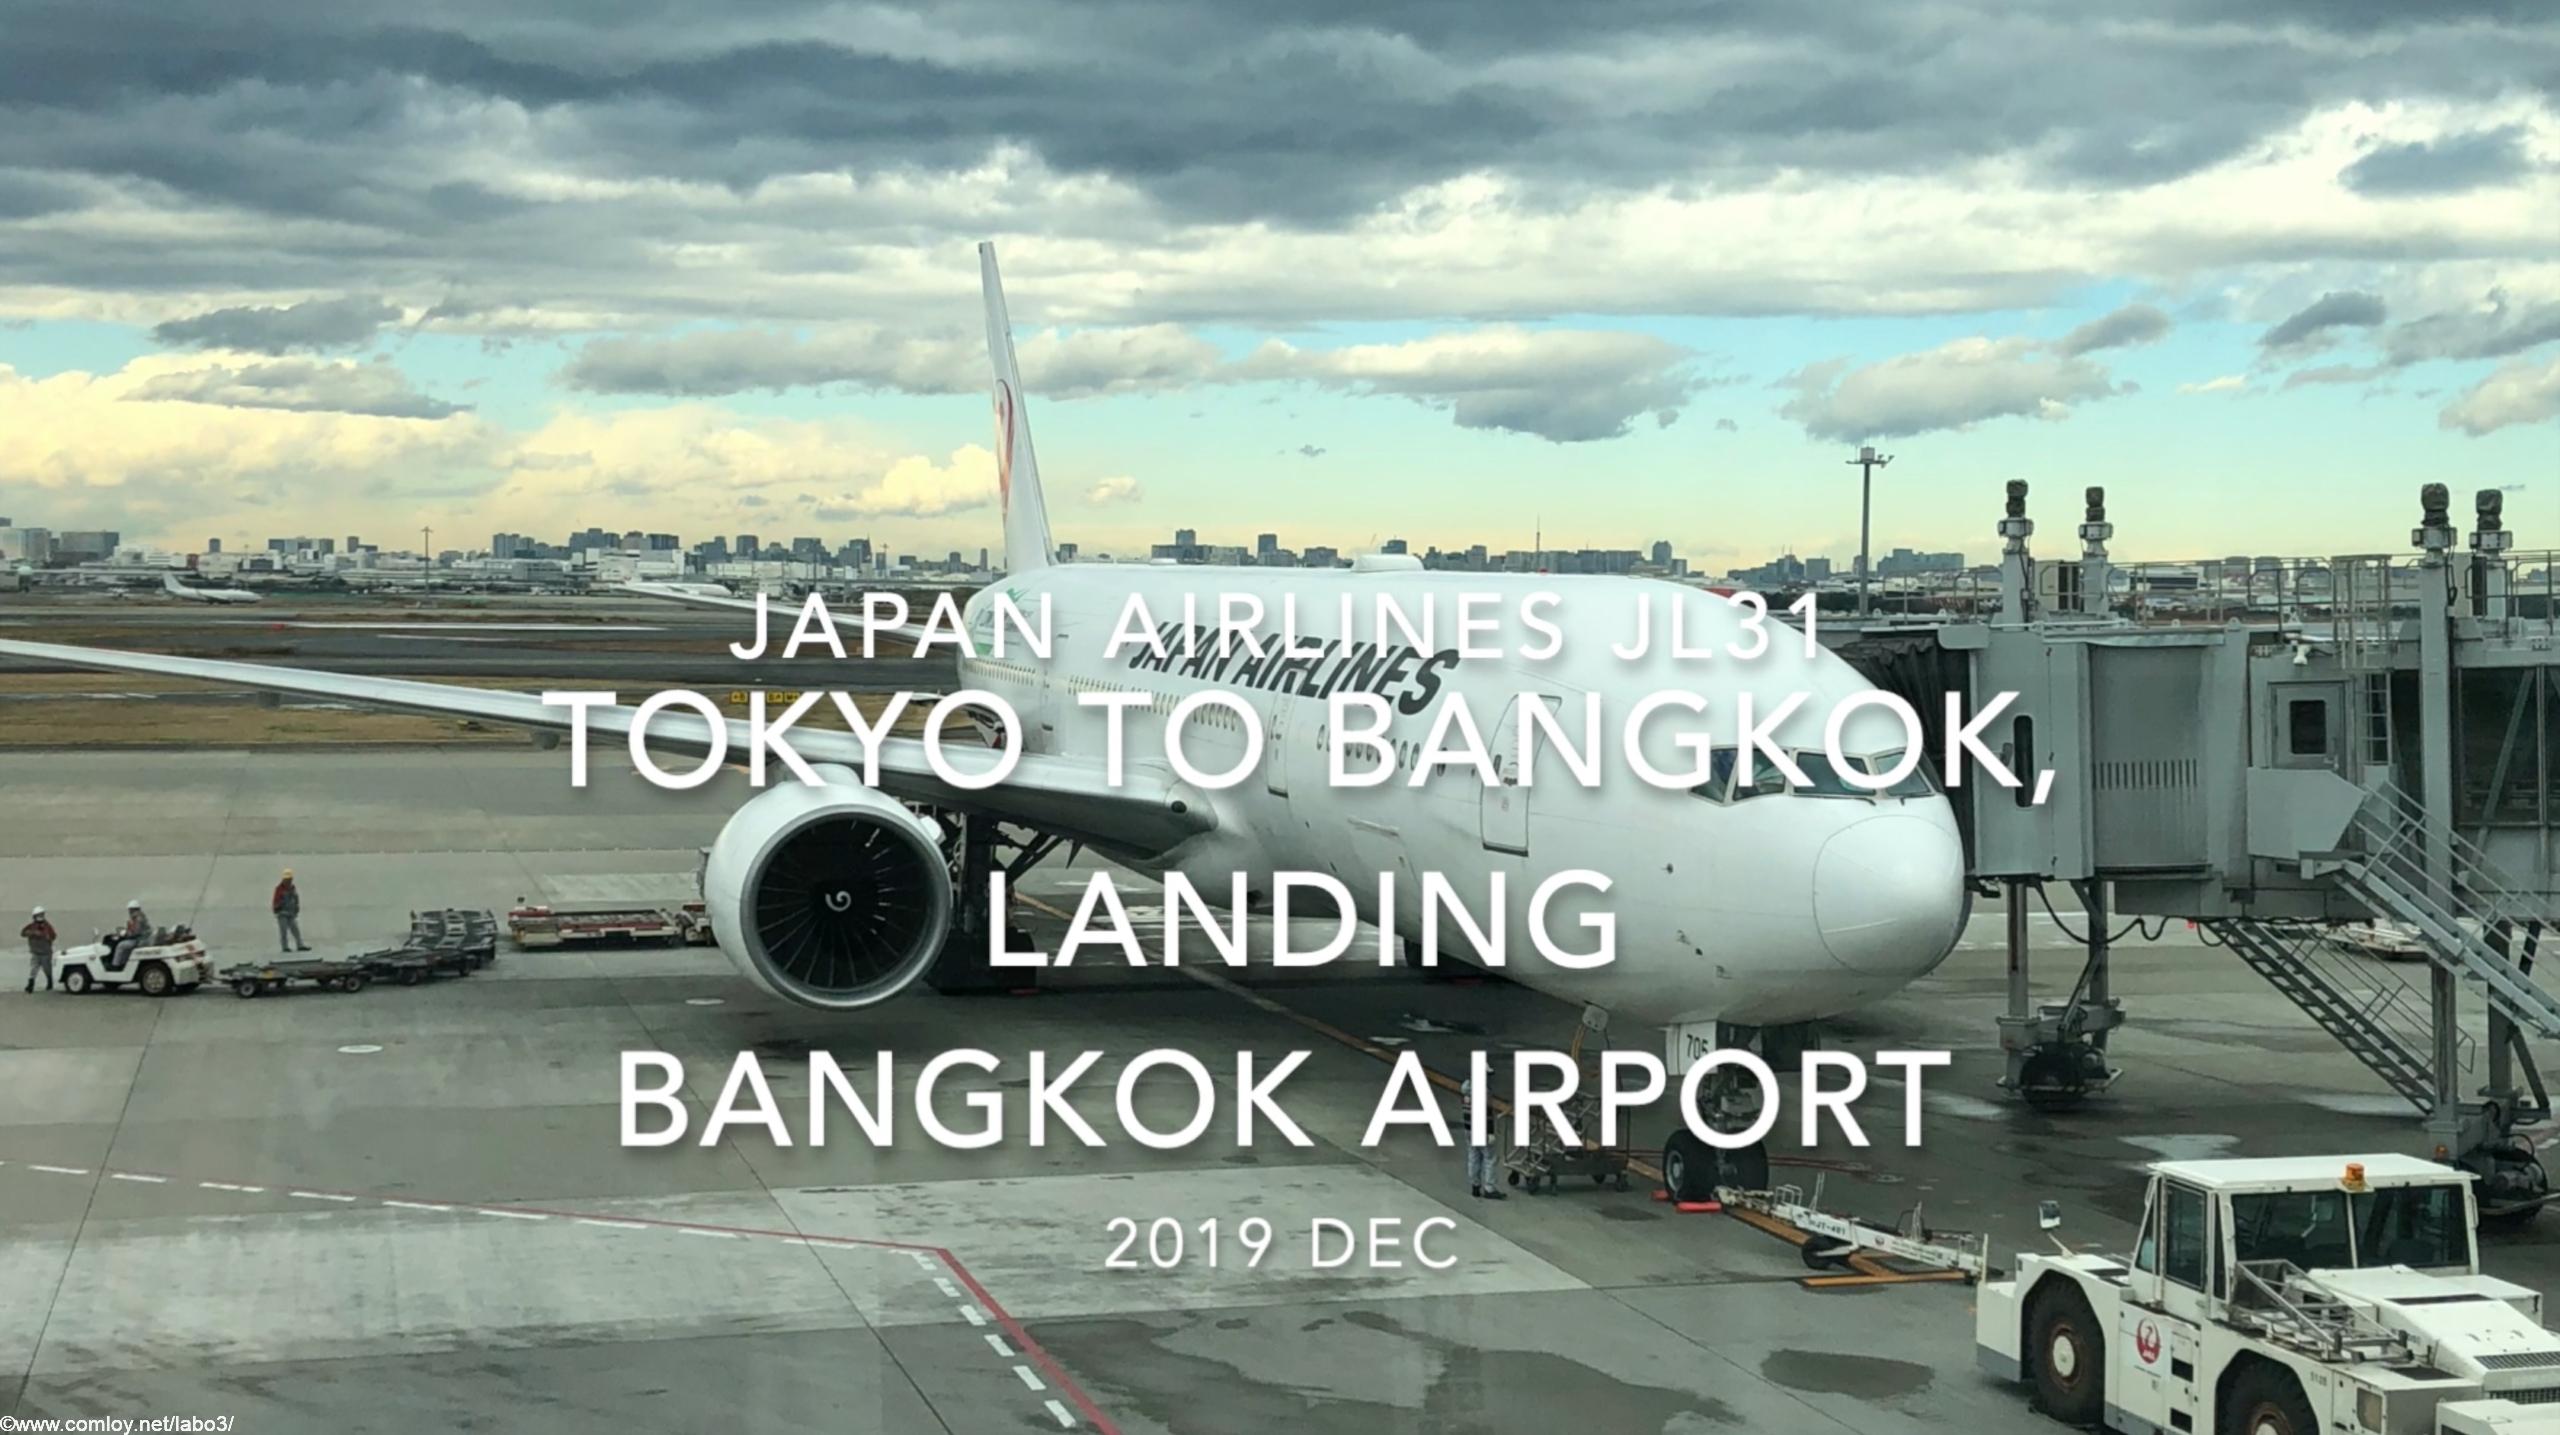 【機内から離着陸映像】2019 Dec Japan Airlines JL31 TOKYO HANEDA to Bangkok, Landing Bangkok Airport